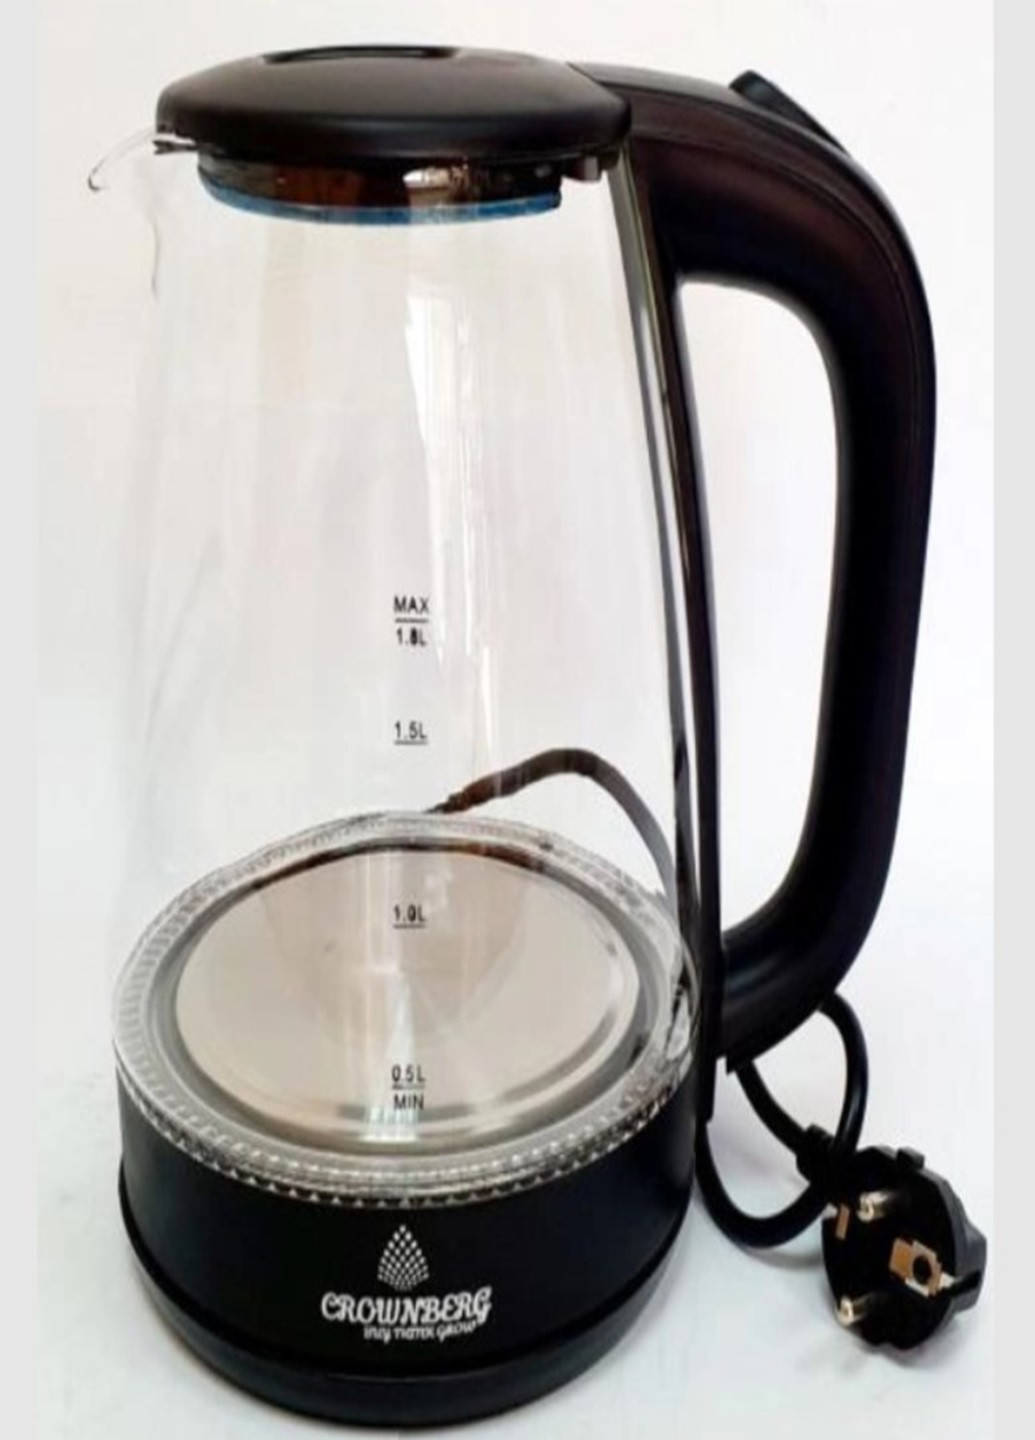 Электрочайник СВ-2846 электрический чайник 1.8л 1800Вт Crownberg (276536270)